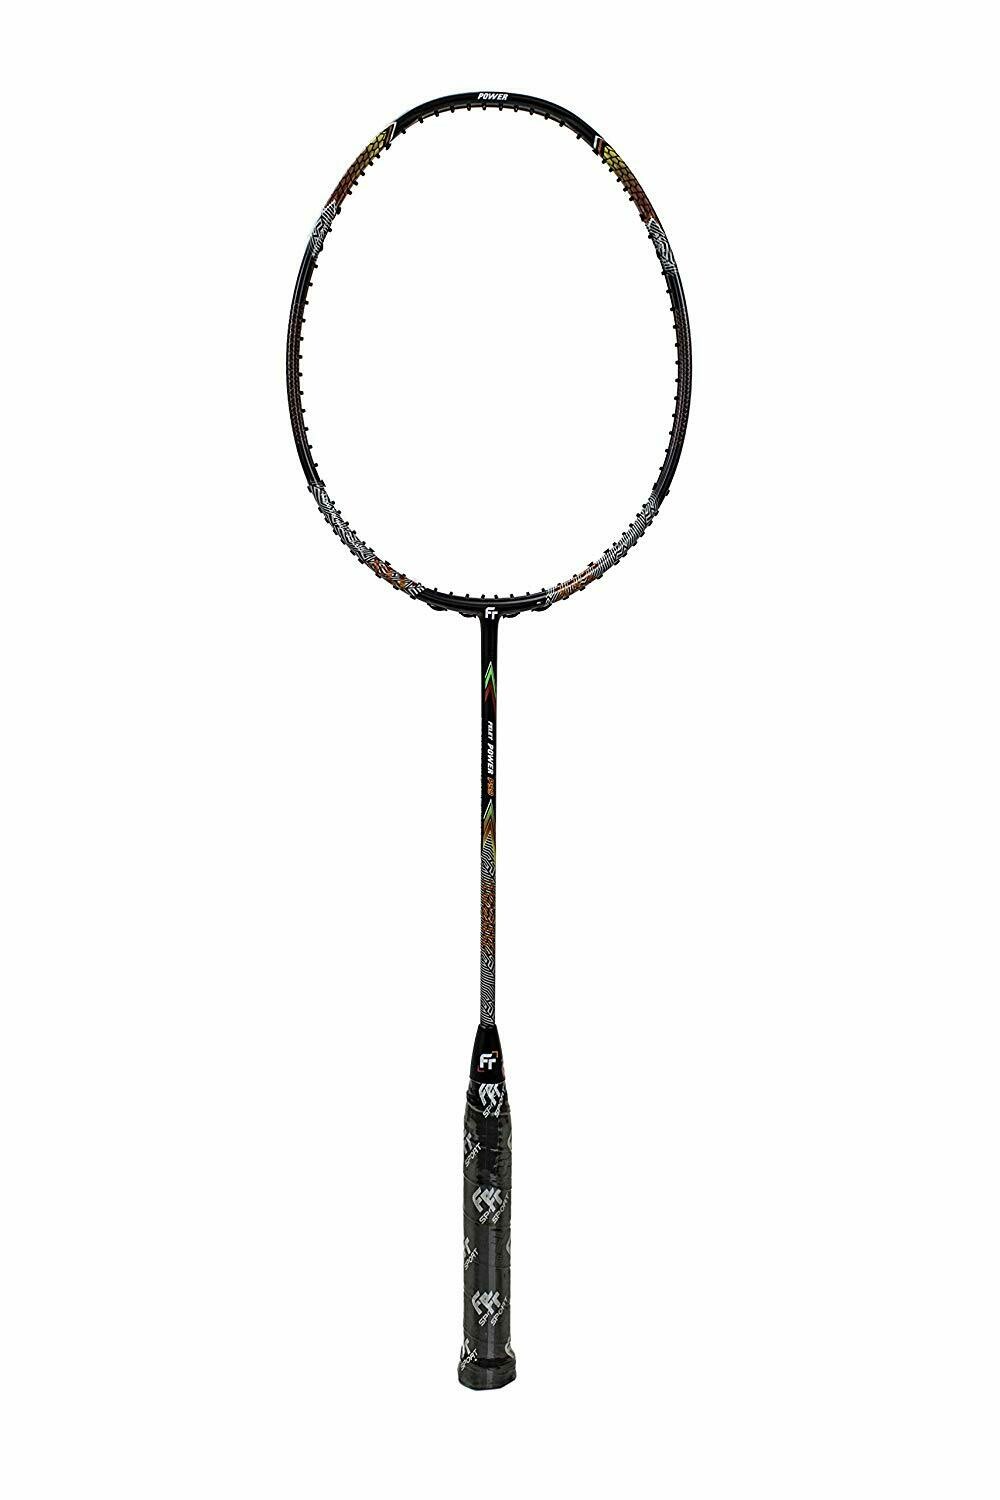 Fleet Felet Power P99 Badminton Racquet